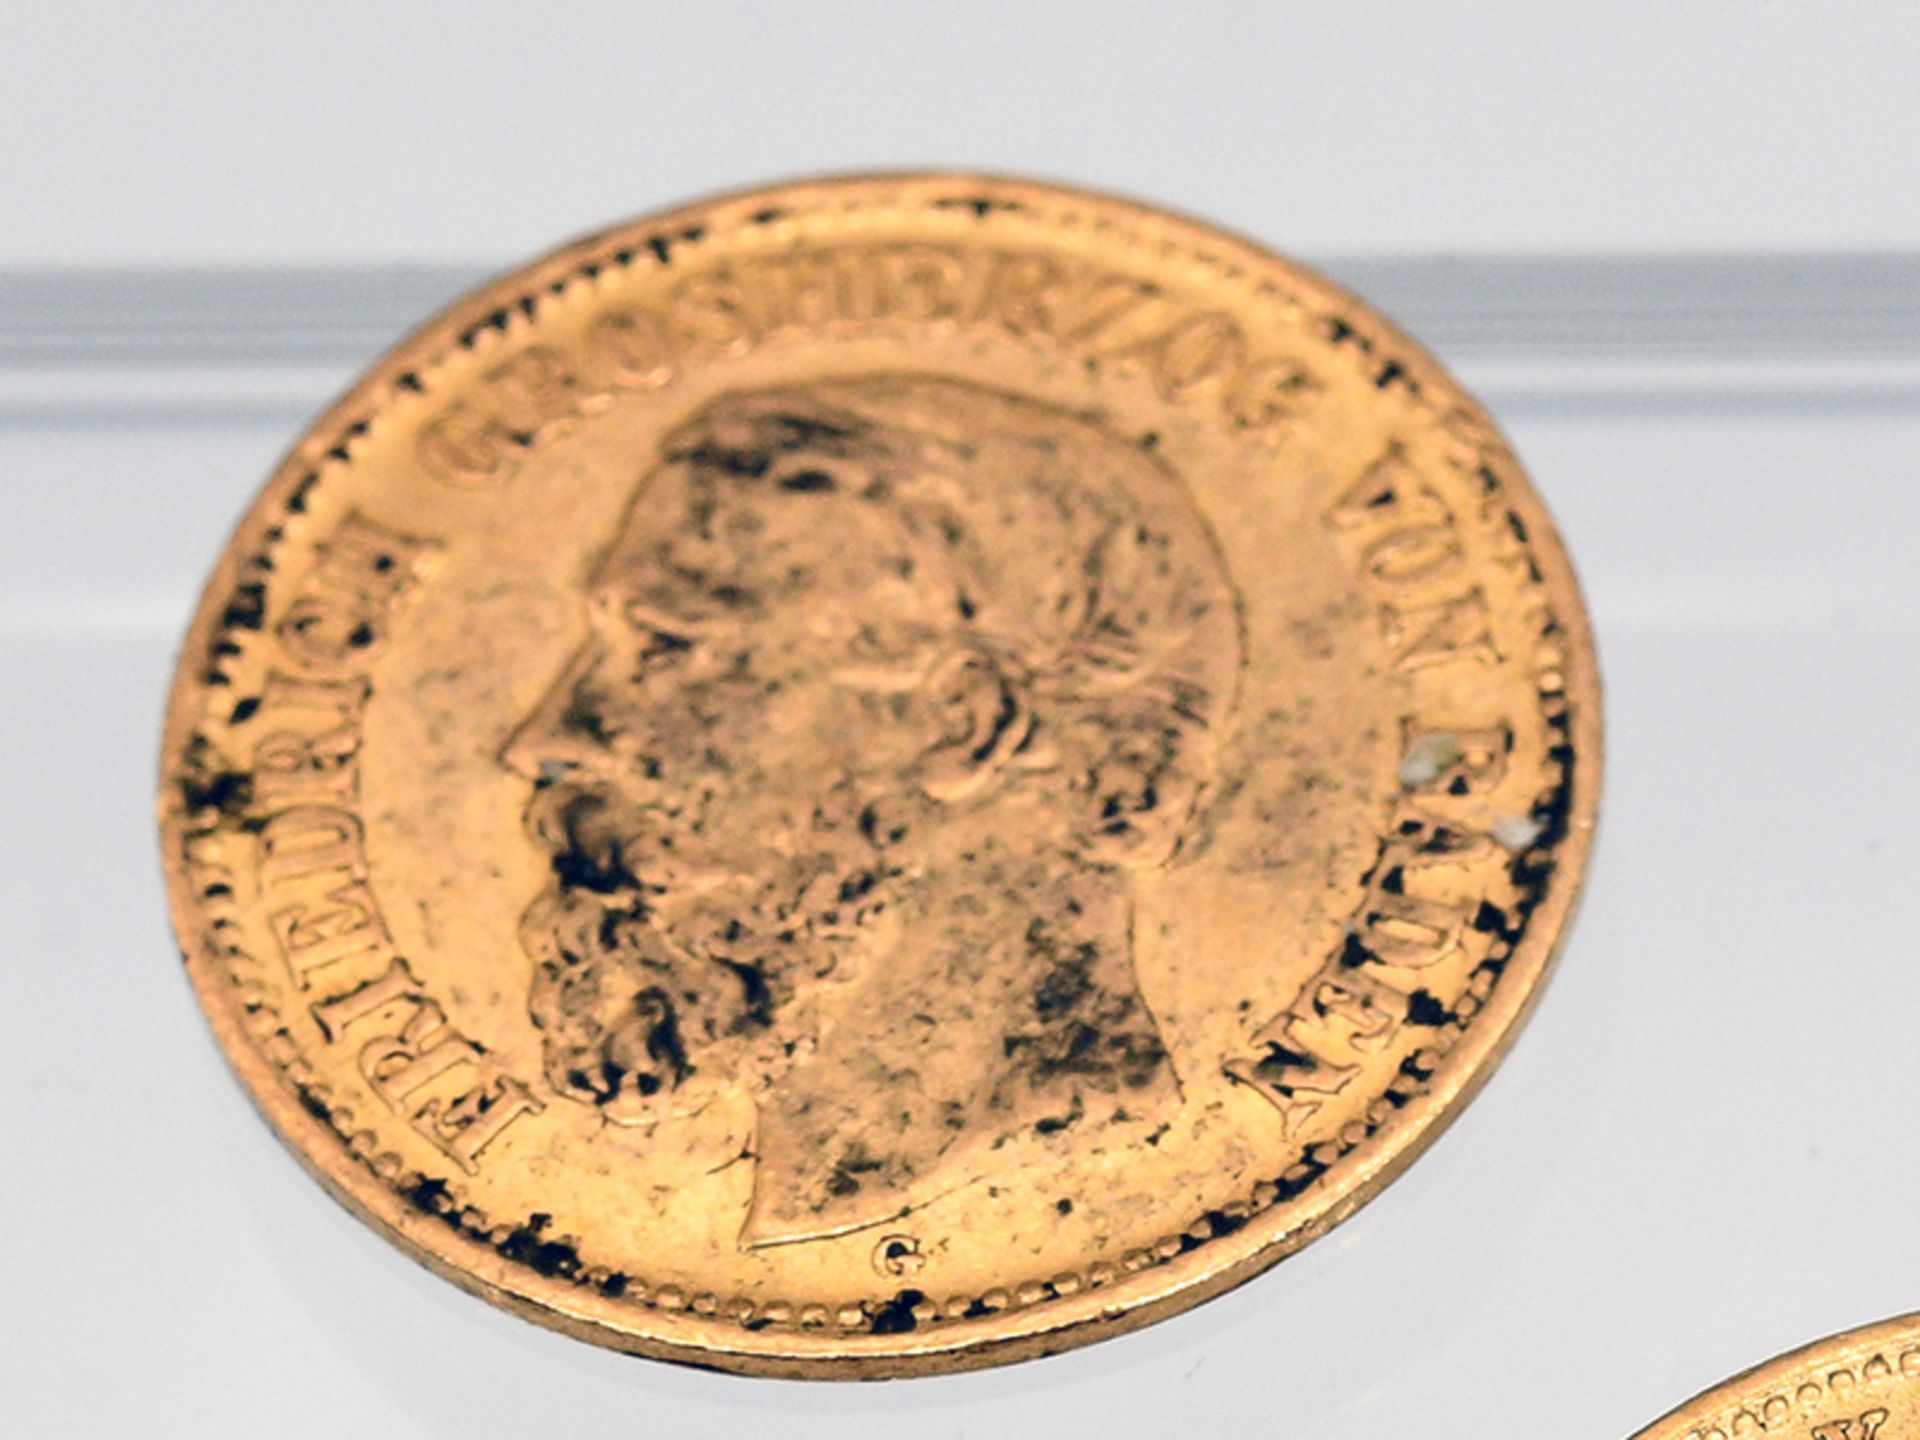 10 Goldmünzen "5 Mark", Deutsches Kaiserreich/Preußen, Sachsen, Bayern, Württemberg, Baden, Hamburg, - Bild 5 aus 8